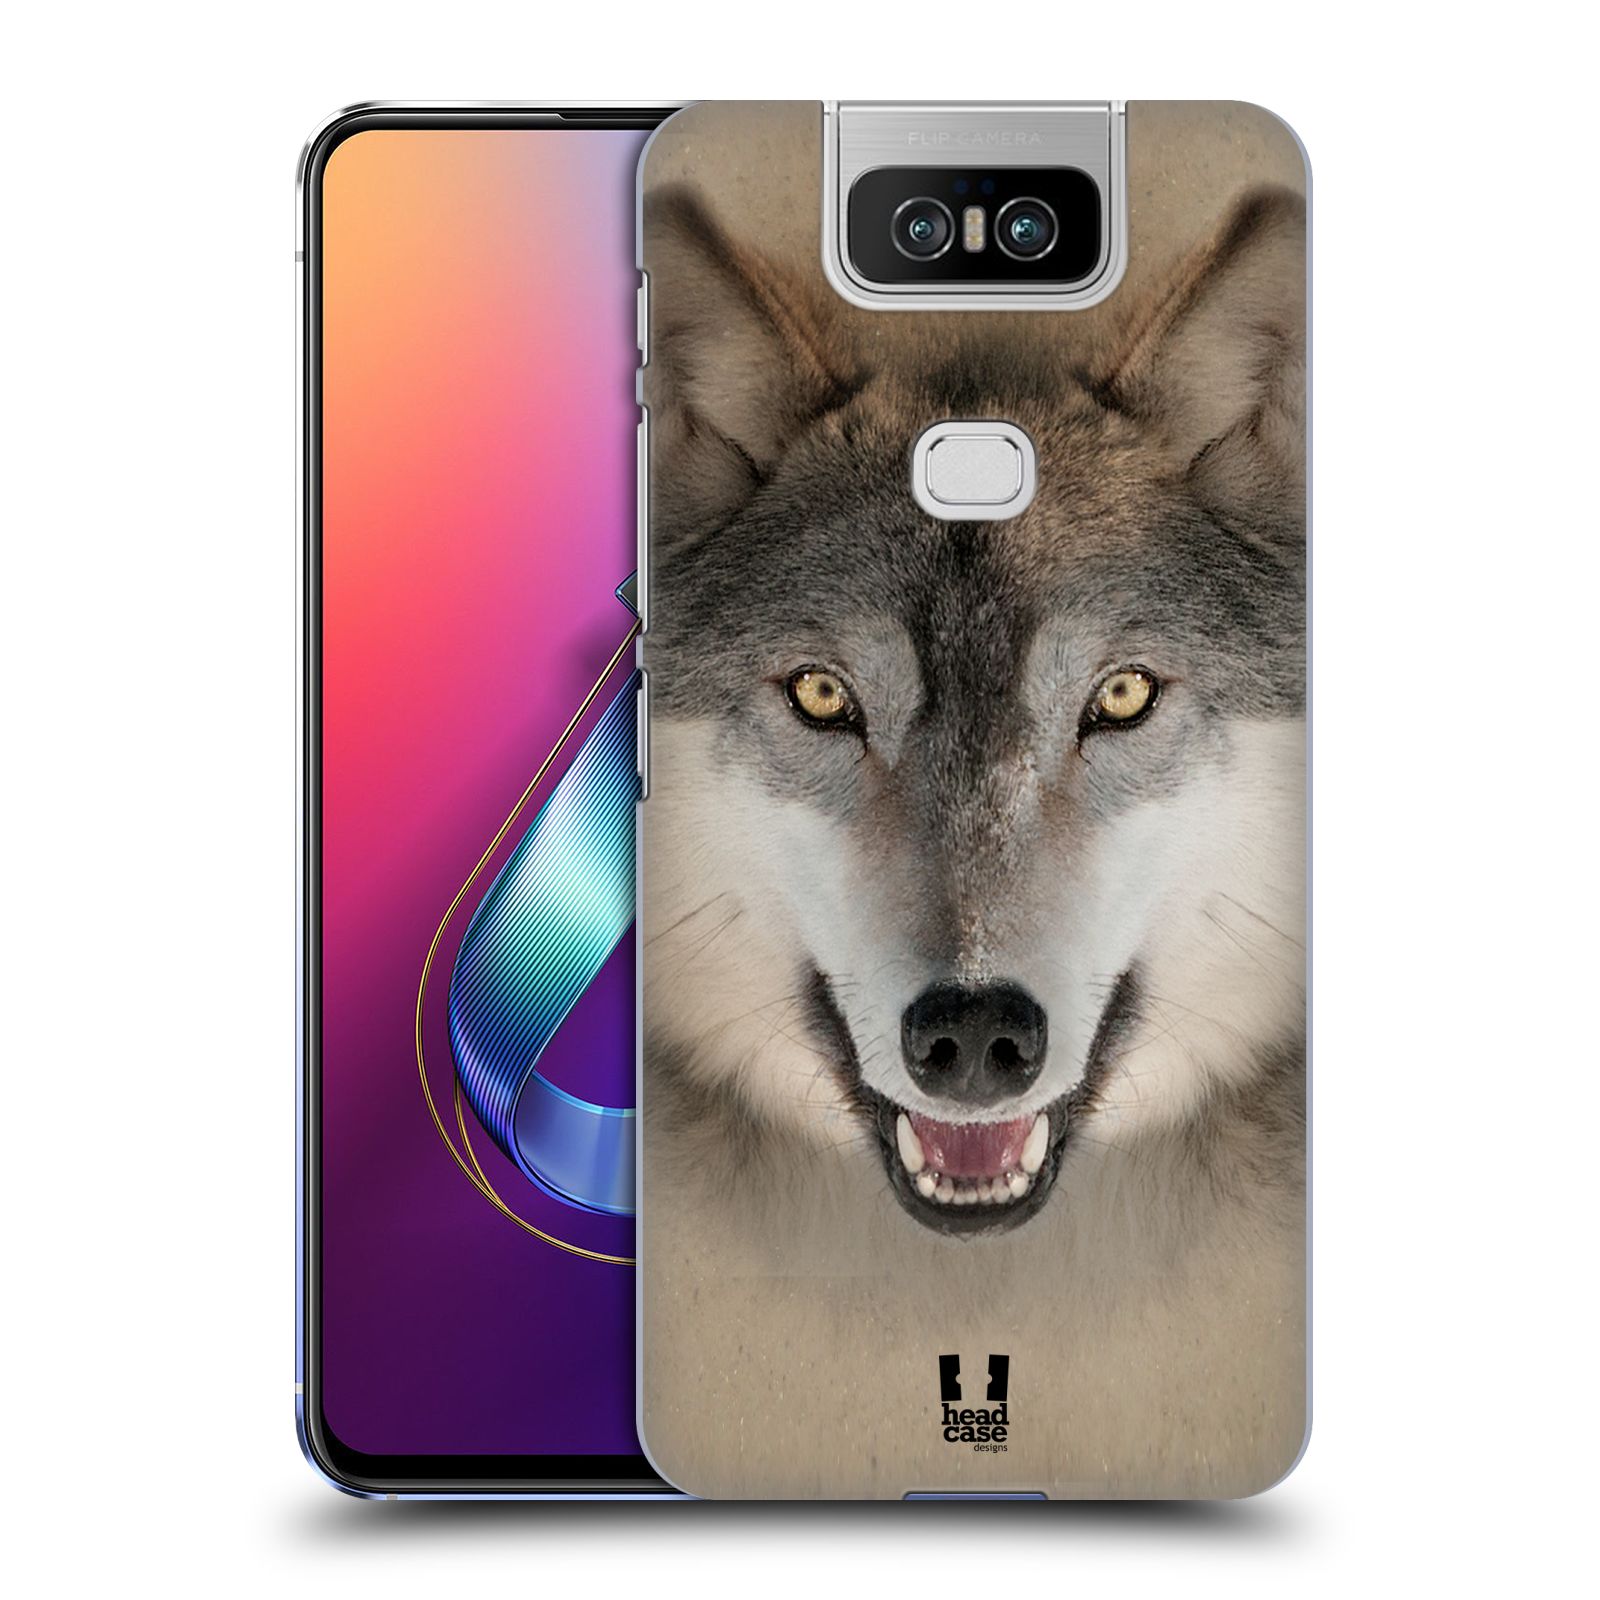 Pouzdro na mobil Asus Zenfone 6 ZS630KL - HEAD CASE - vzor Zvířecí tváře 2 vlk šedý